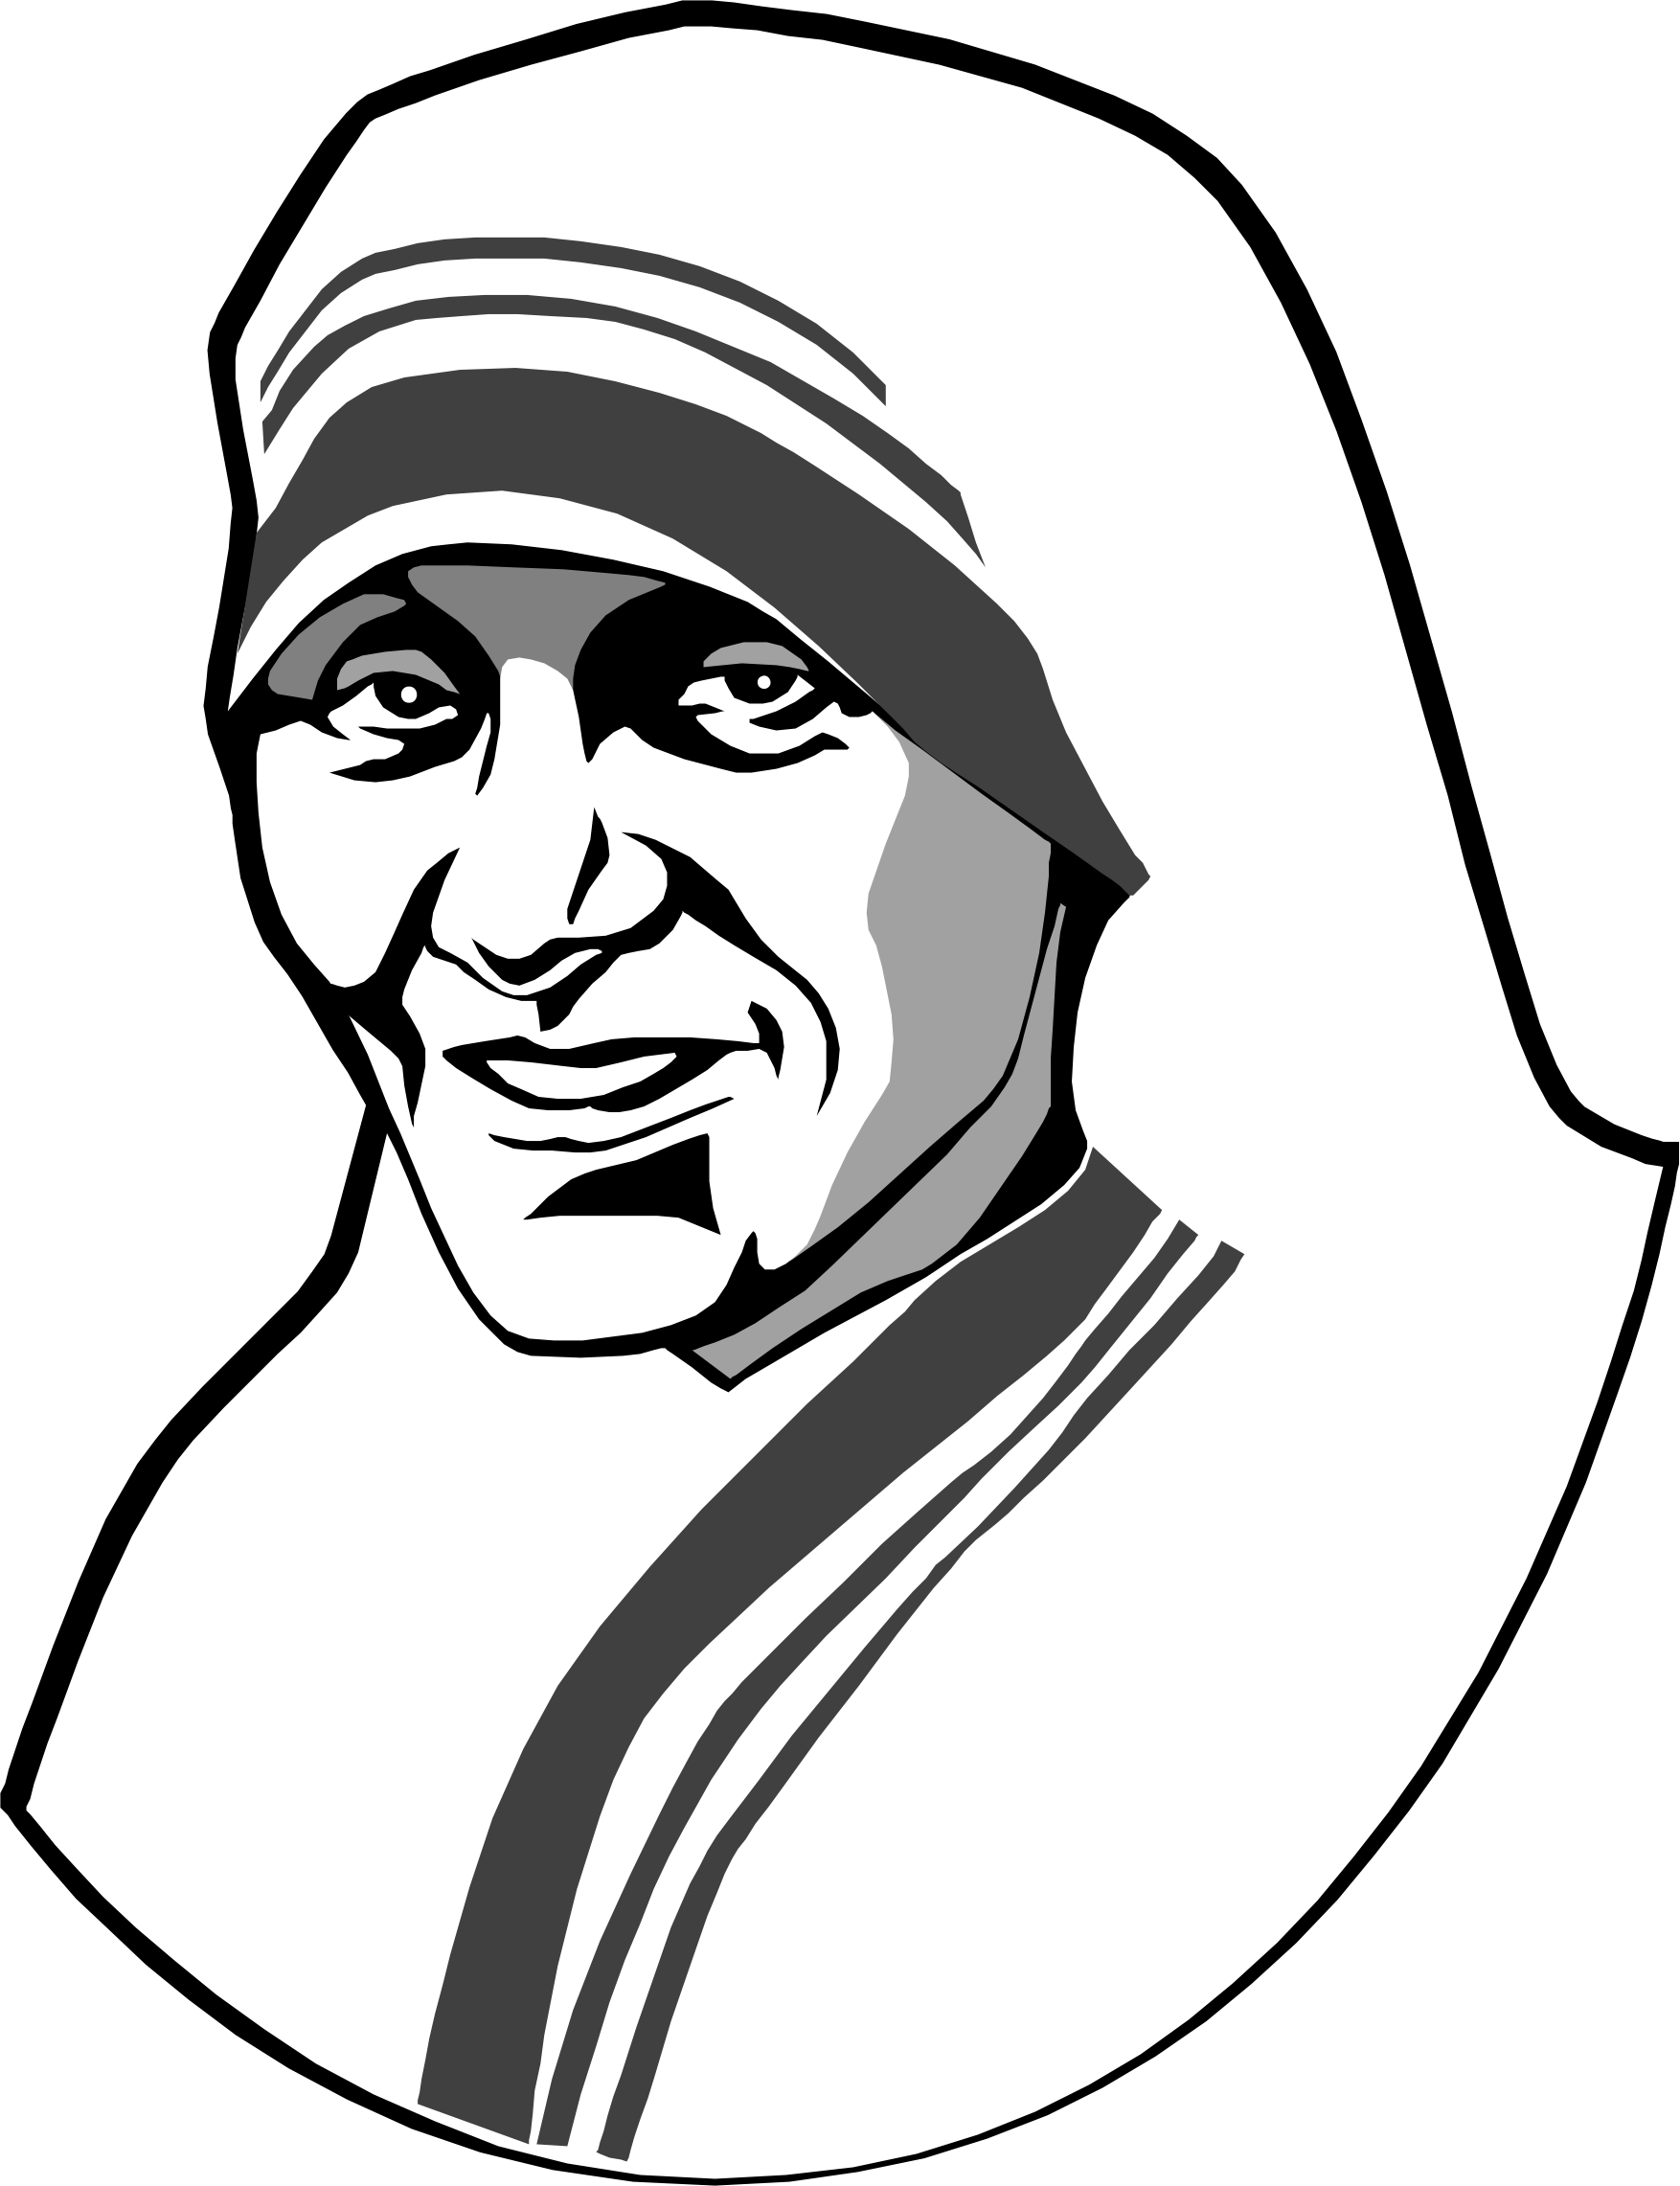 Mother Teresa Drawing at GetDrawings Free download